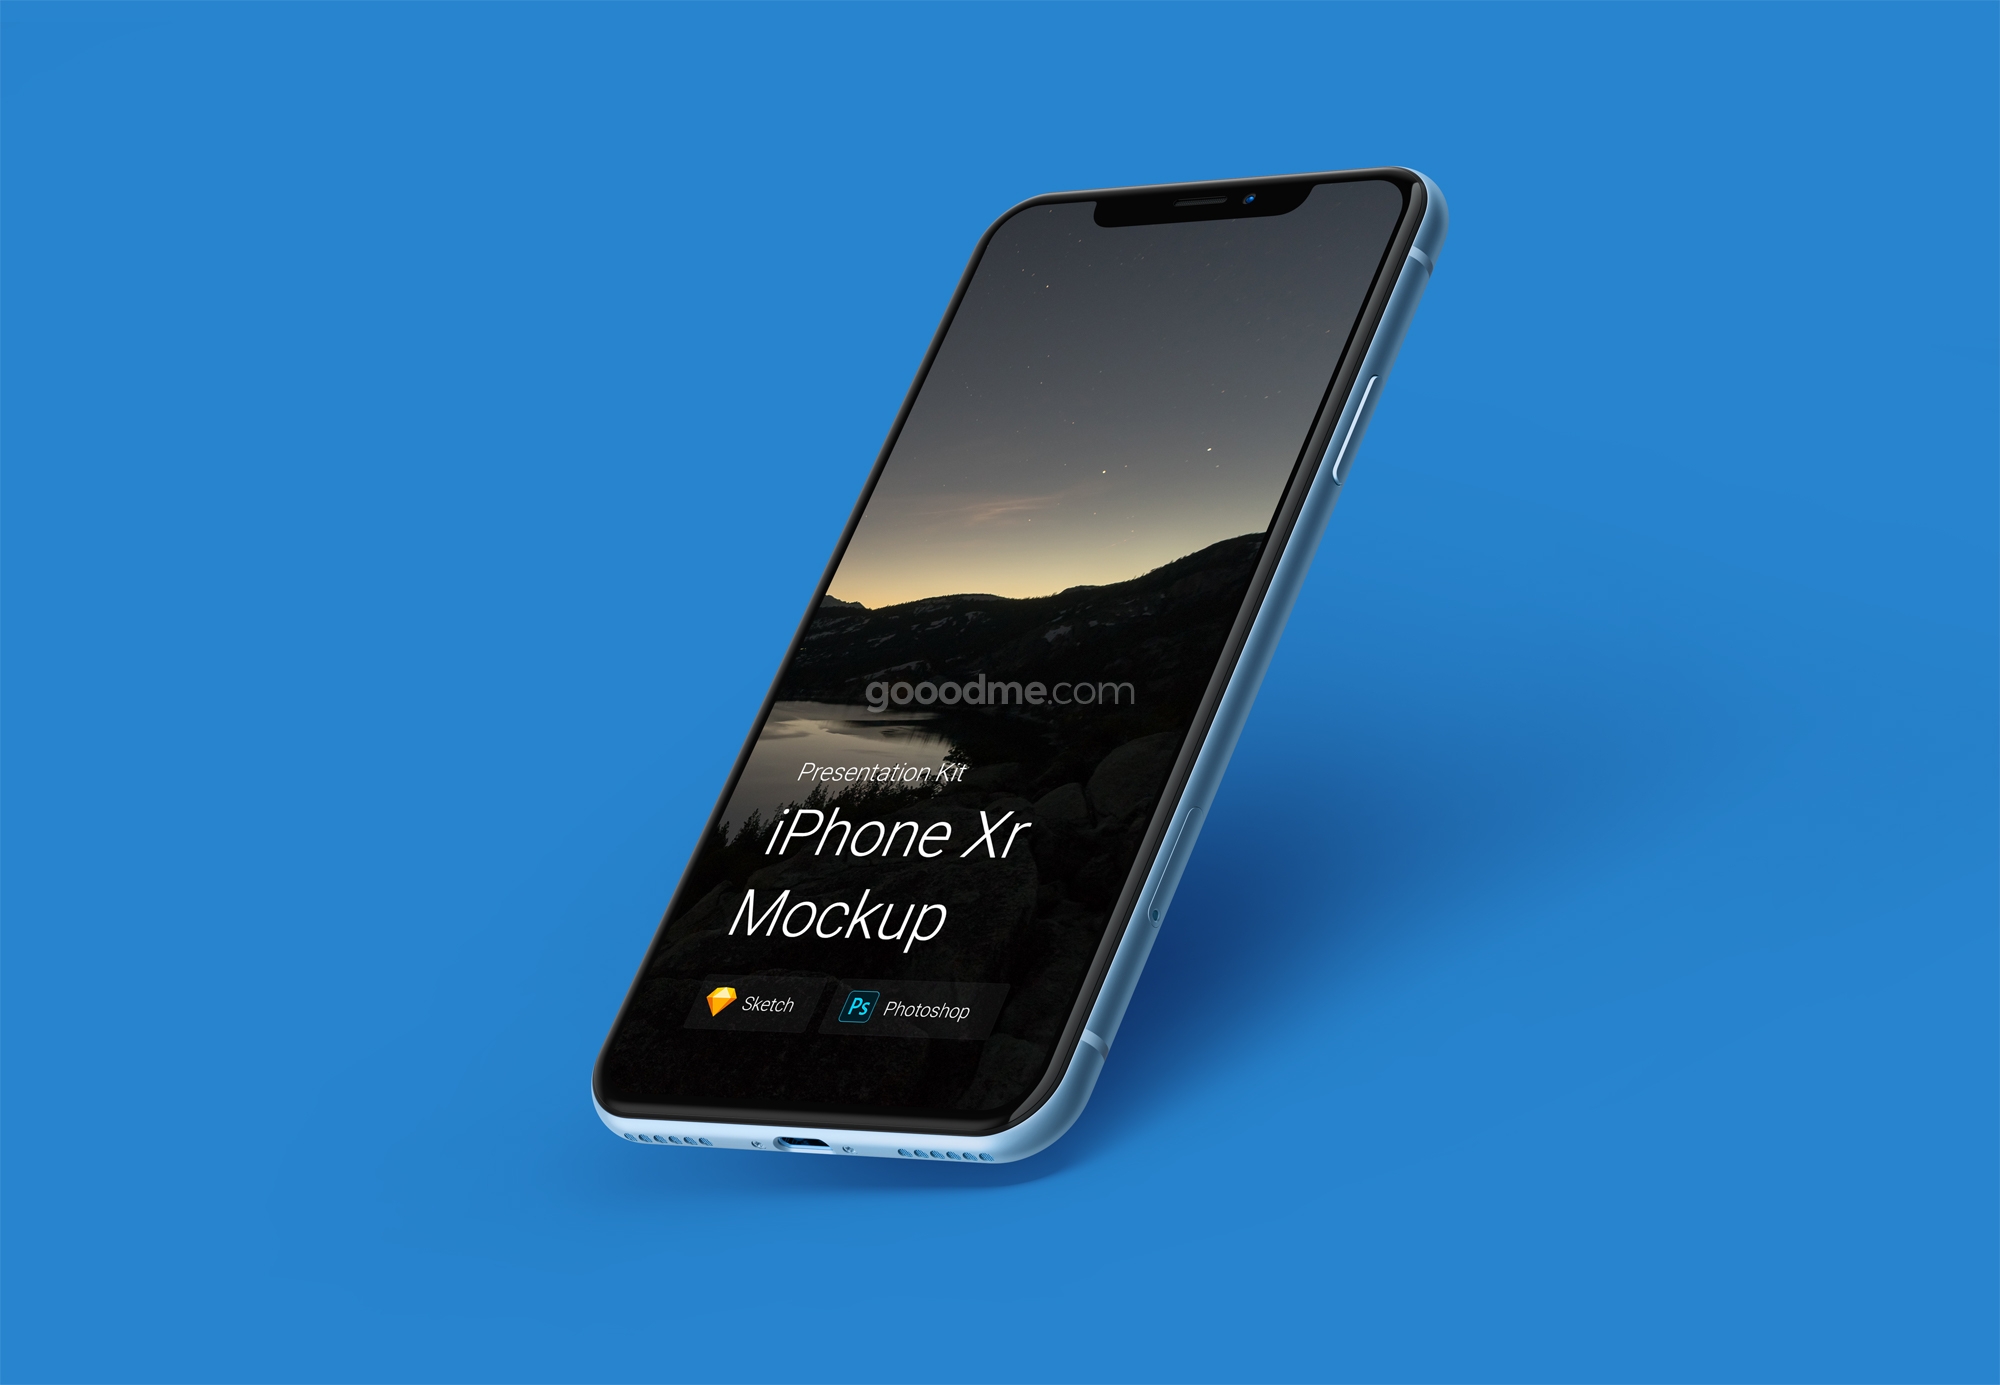 335 可商用iPhone Xr手机屏幕设计样机模型 iPhone Xr Mockup